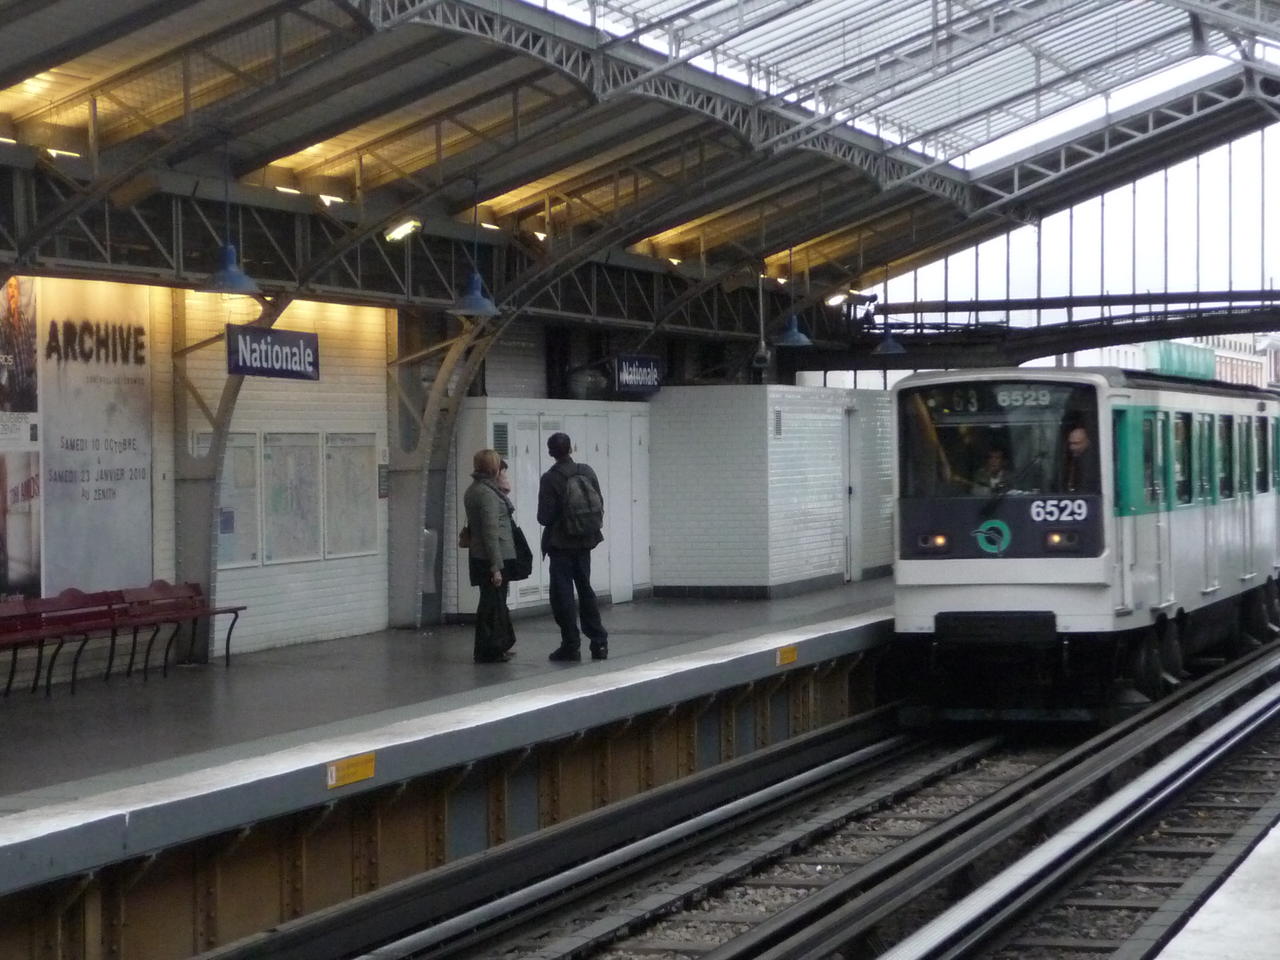 Frankreich-Reisebericht: "Die Pariser Metro"